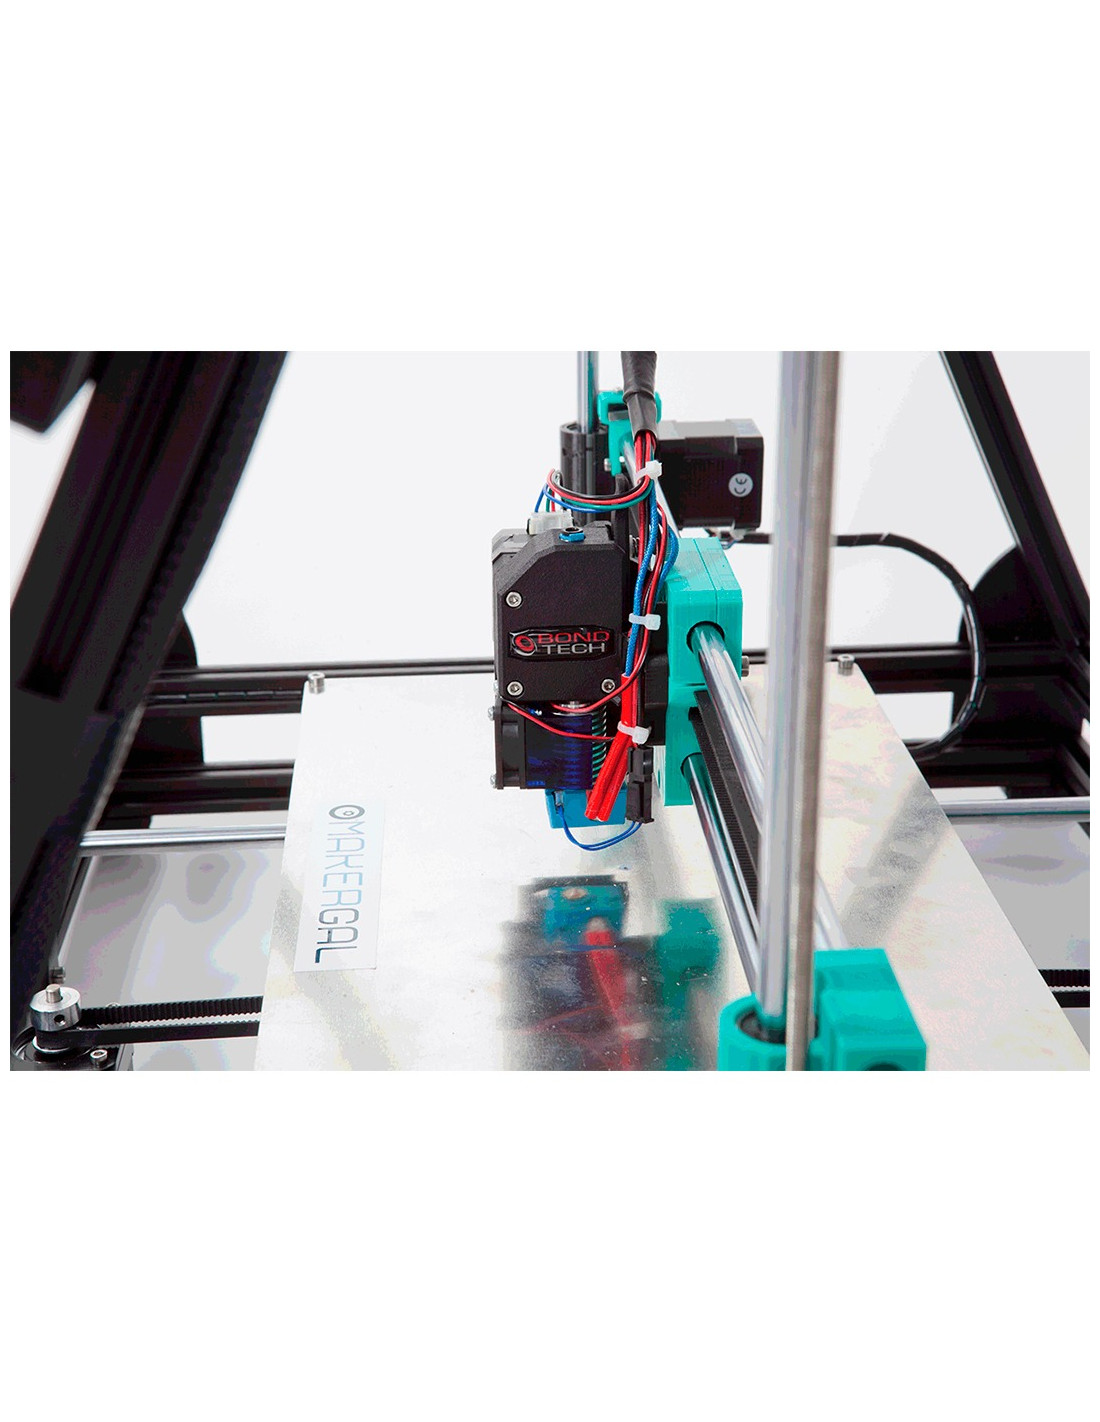 Imprimante 3D Mendel Max XL V6 de MakerGal